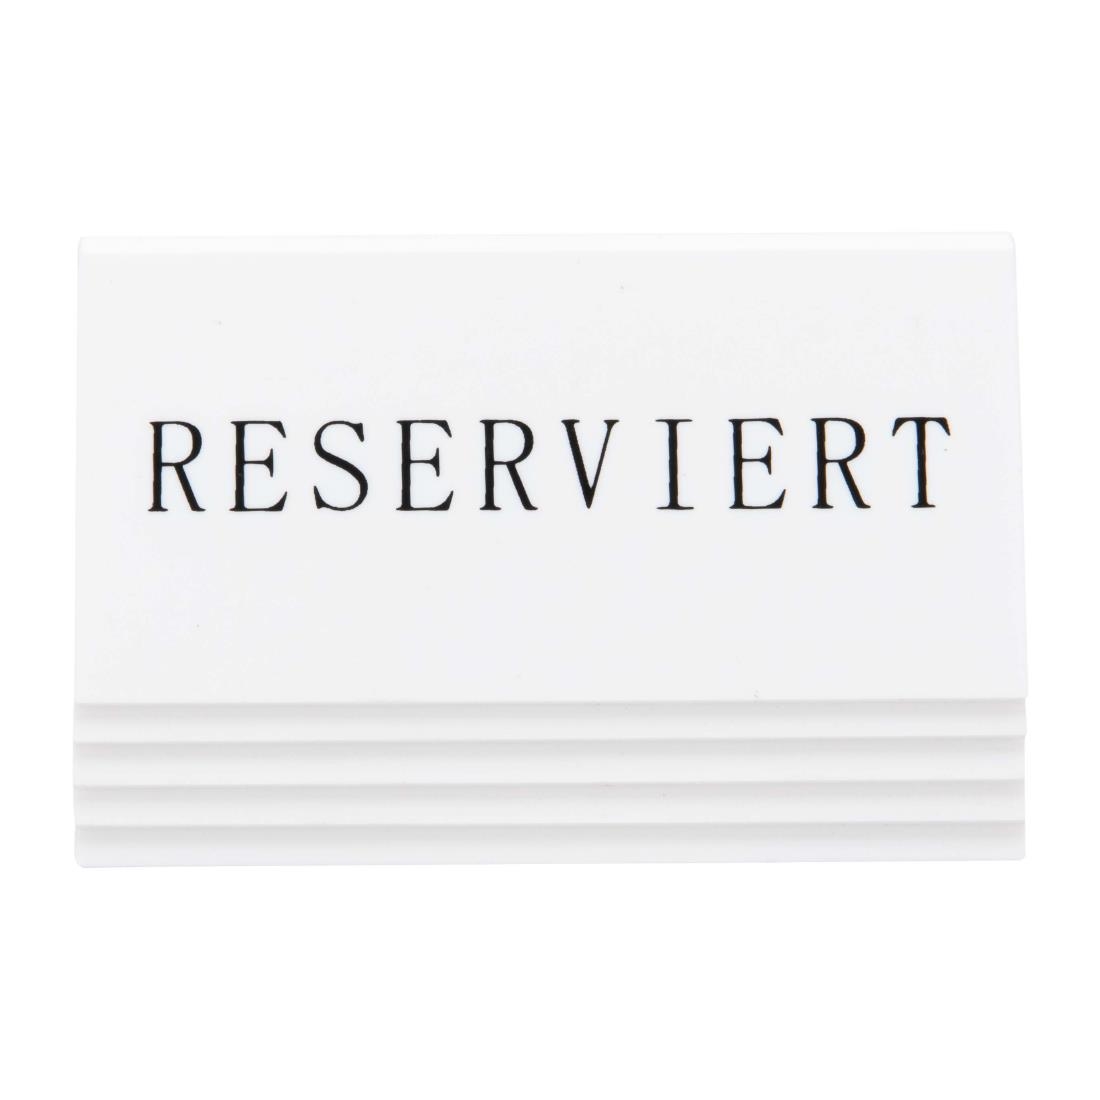 Securit Reserveringstafelstandaards met Duits: 'Reserviert' Witte acryl standaarden met zwart lettertype (box 5)